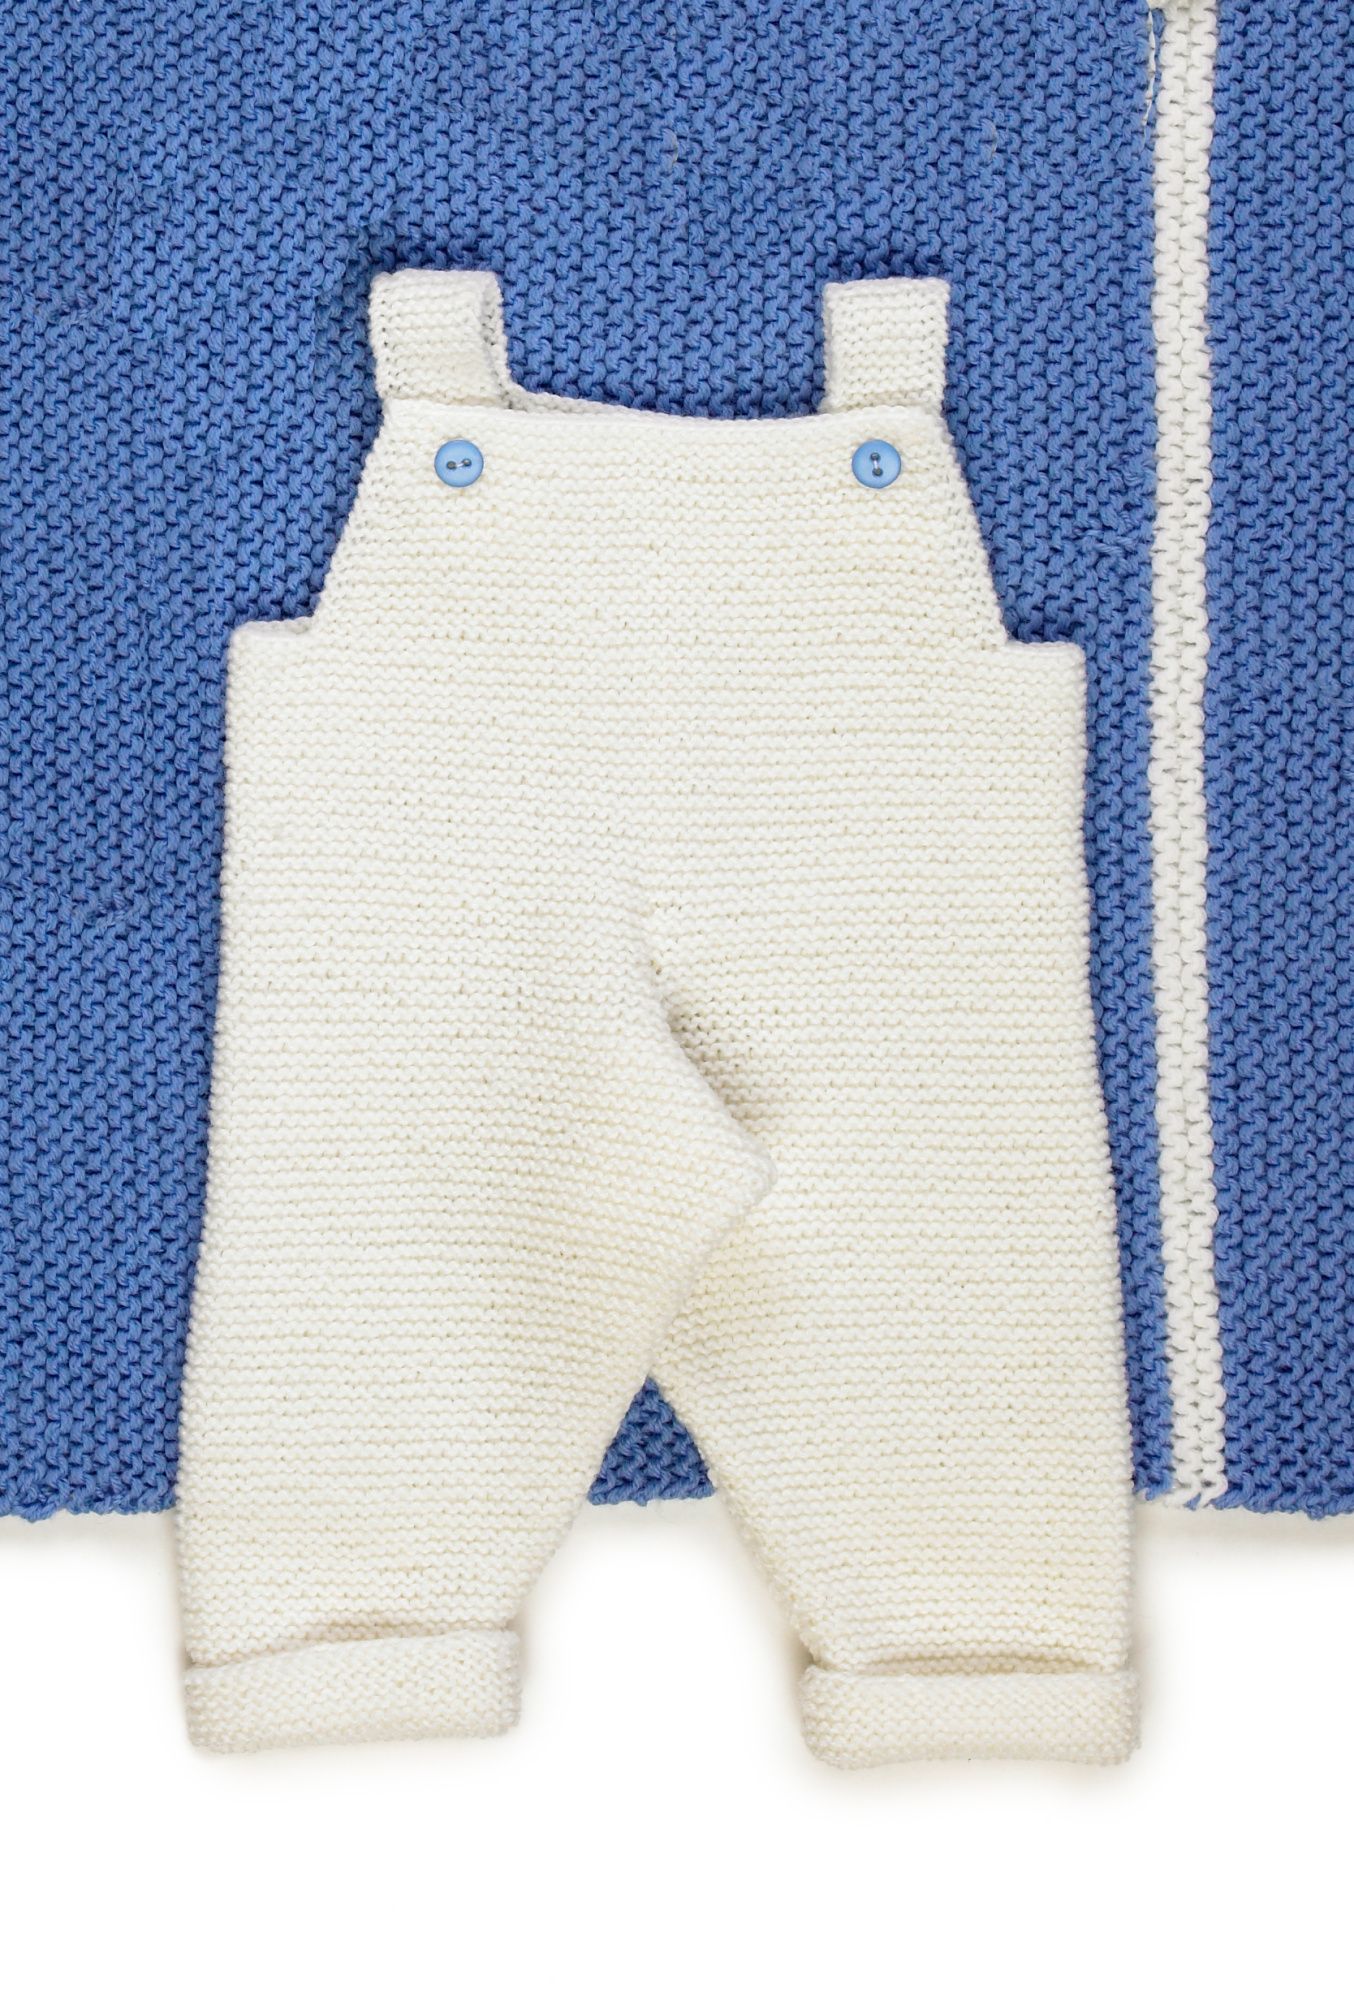 Vauvan neulotut housut Novita Wool (arkistomalli) Example 2